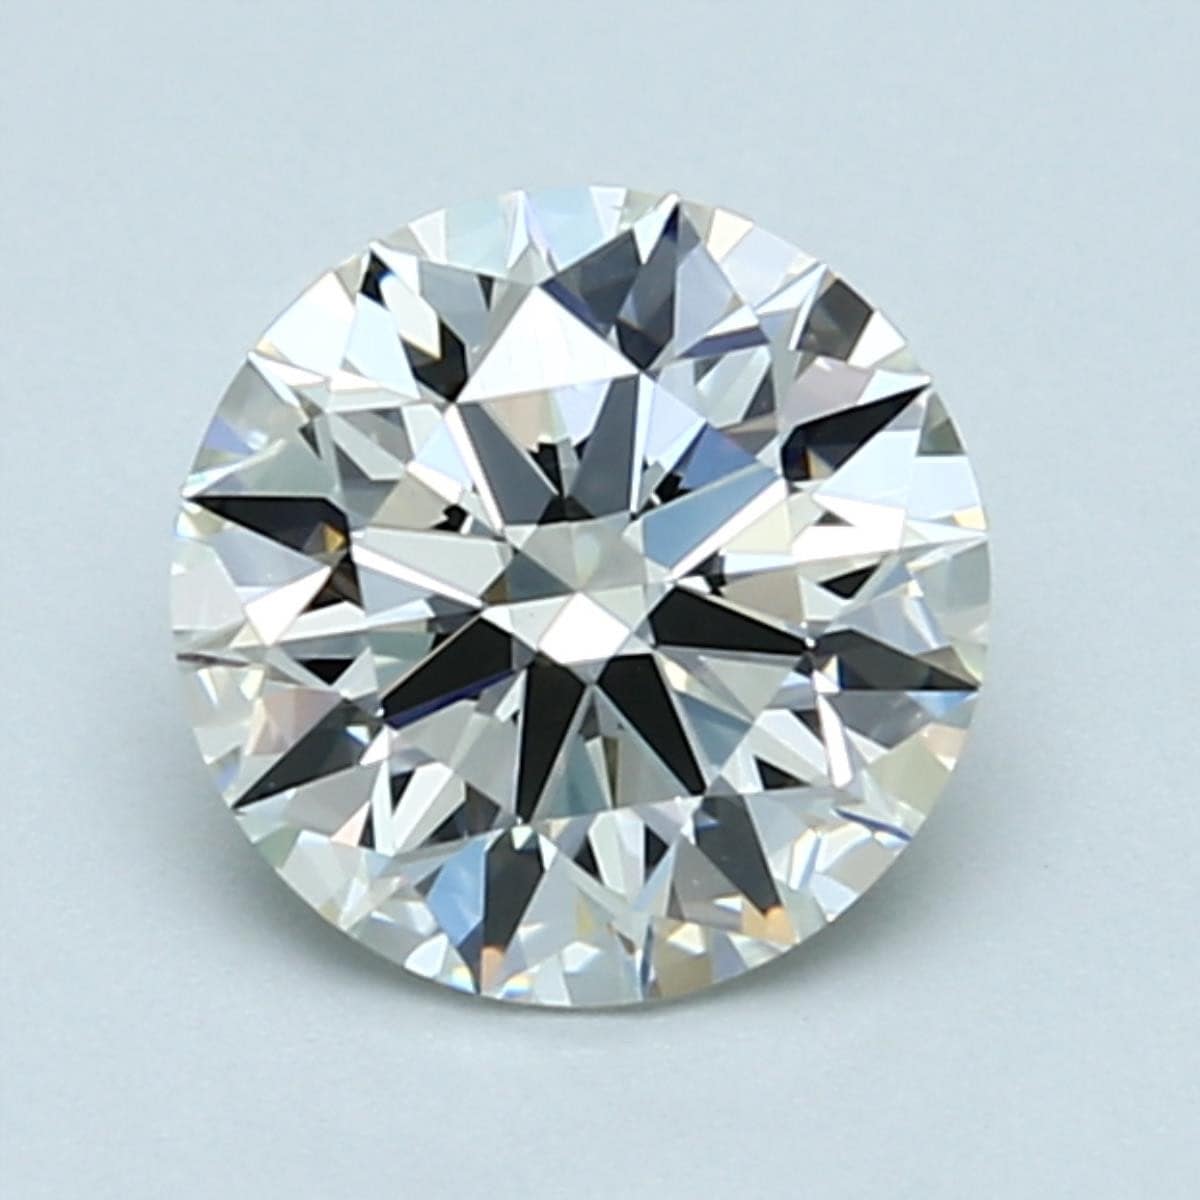 1.5 carat J color diamond with faint fluorescence